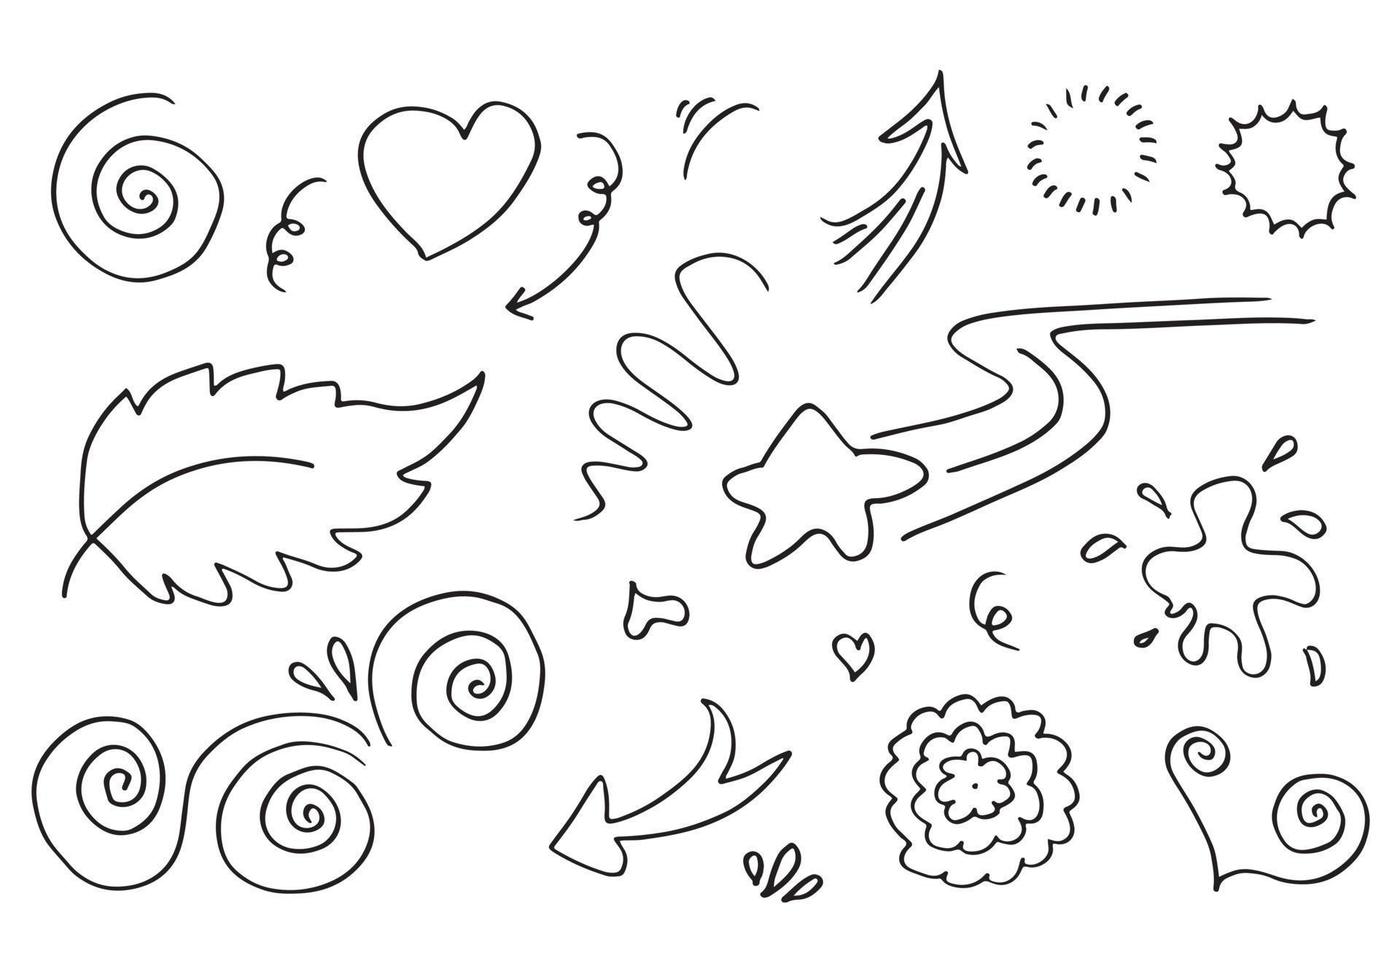 handritade set element, svart på vit bakgrund. pil, hjärta, kärlek, stjärna, löv, sol, ljus, blomma, swish, svep, betoning, virvla, för konceptdesign. vektor